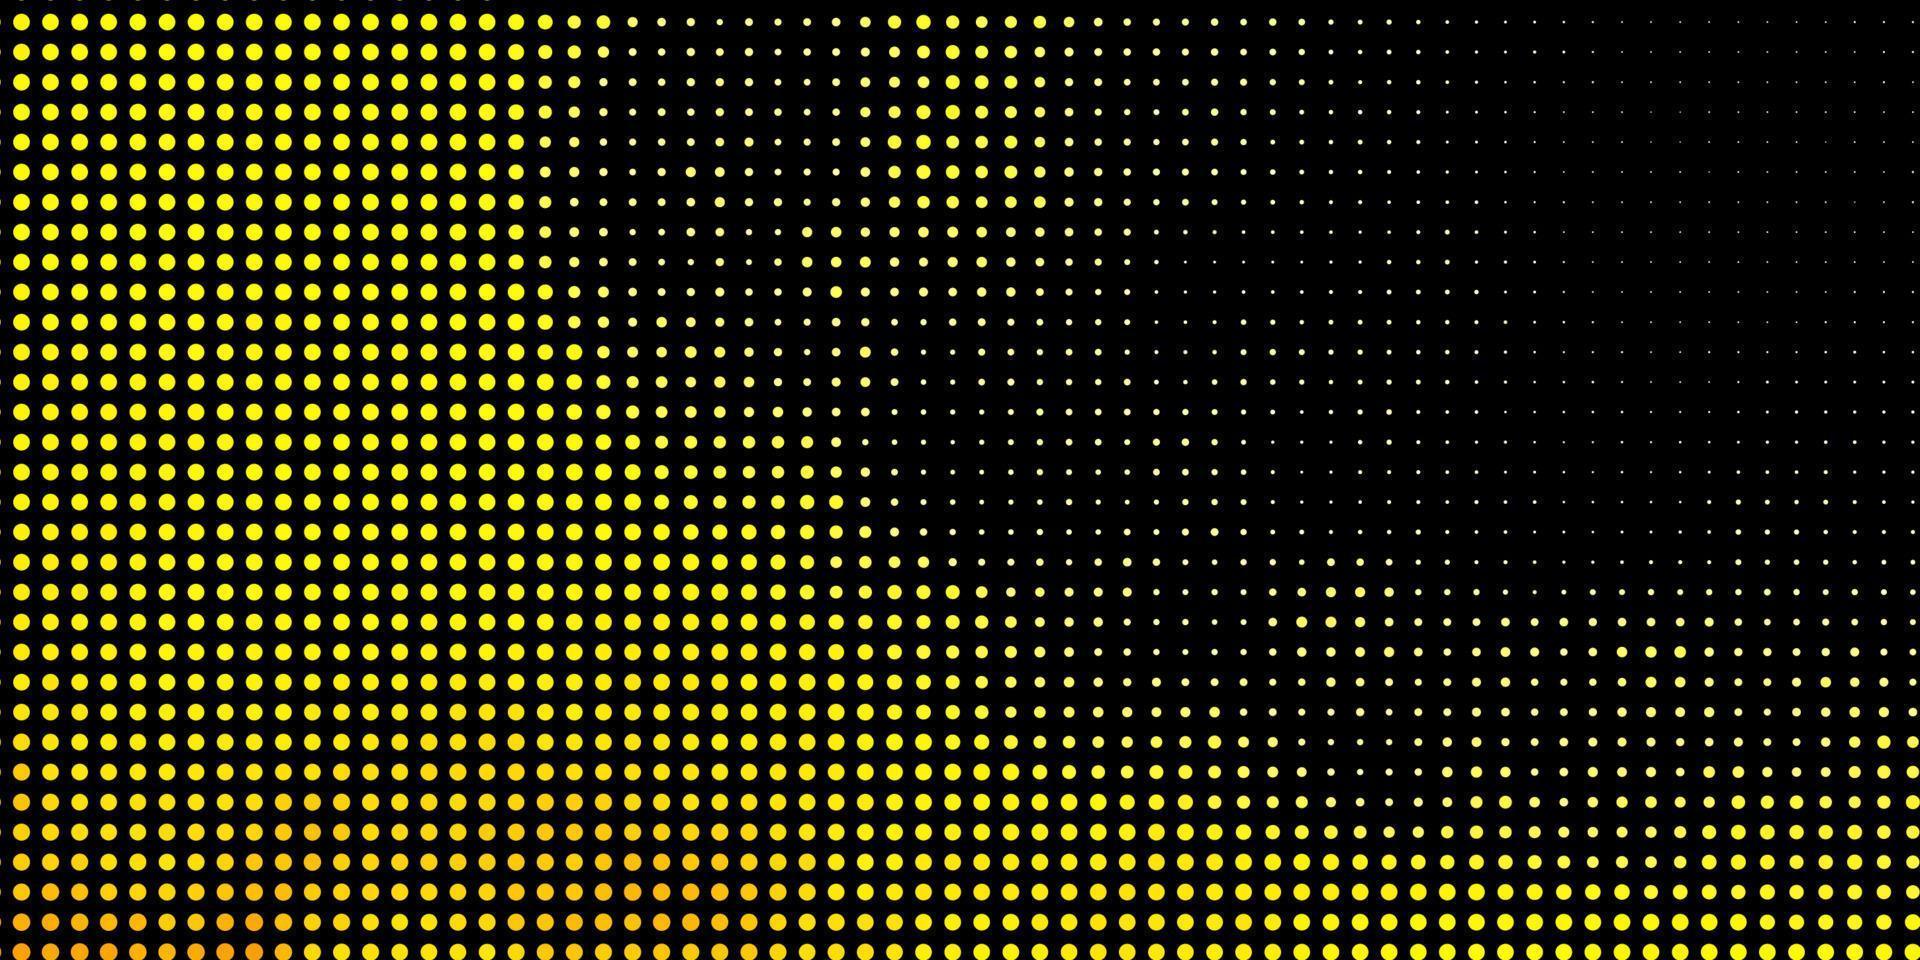 textura de vector rojo, amarillo claro con círculos.